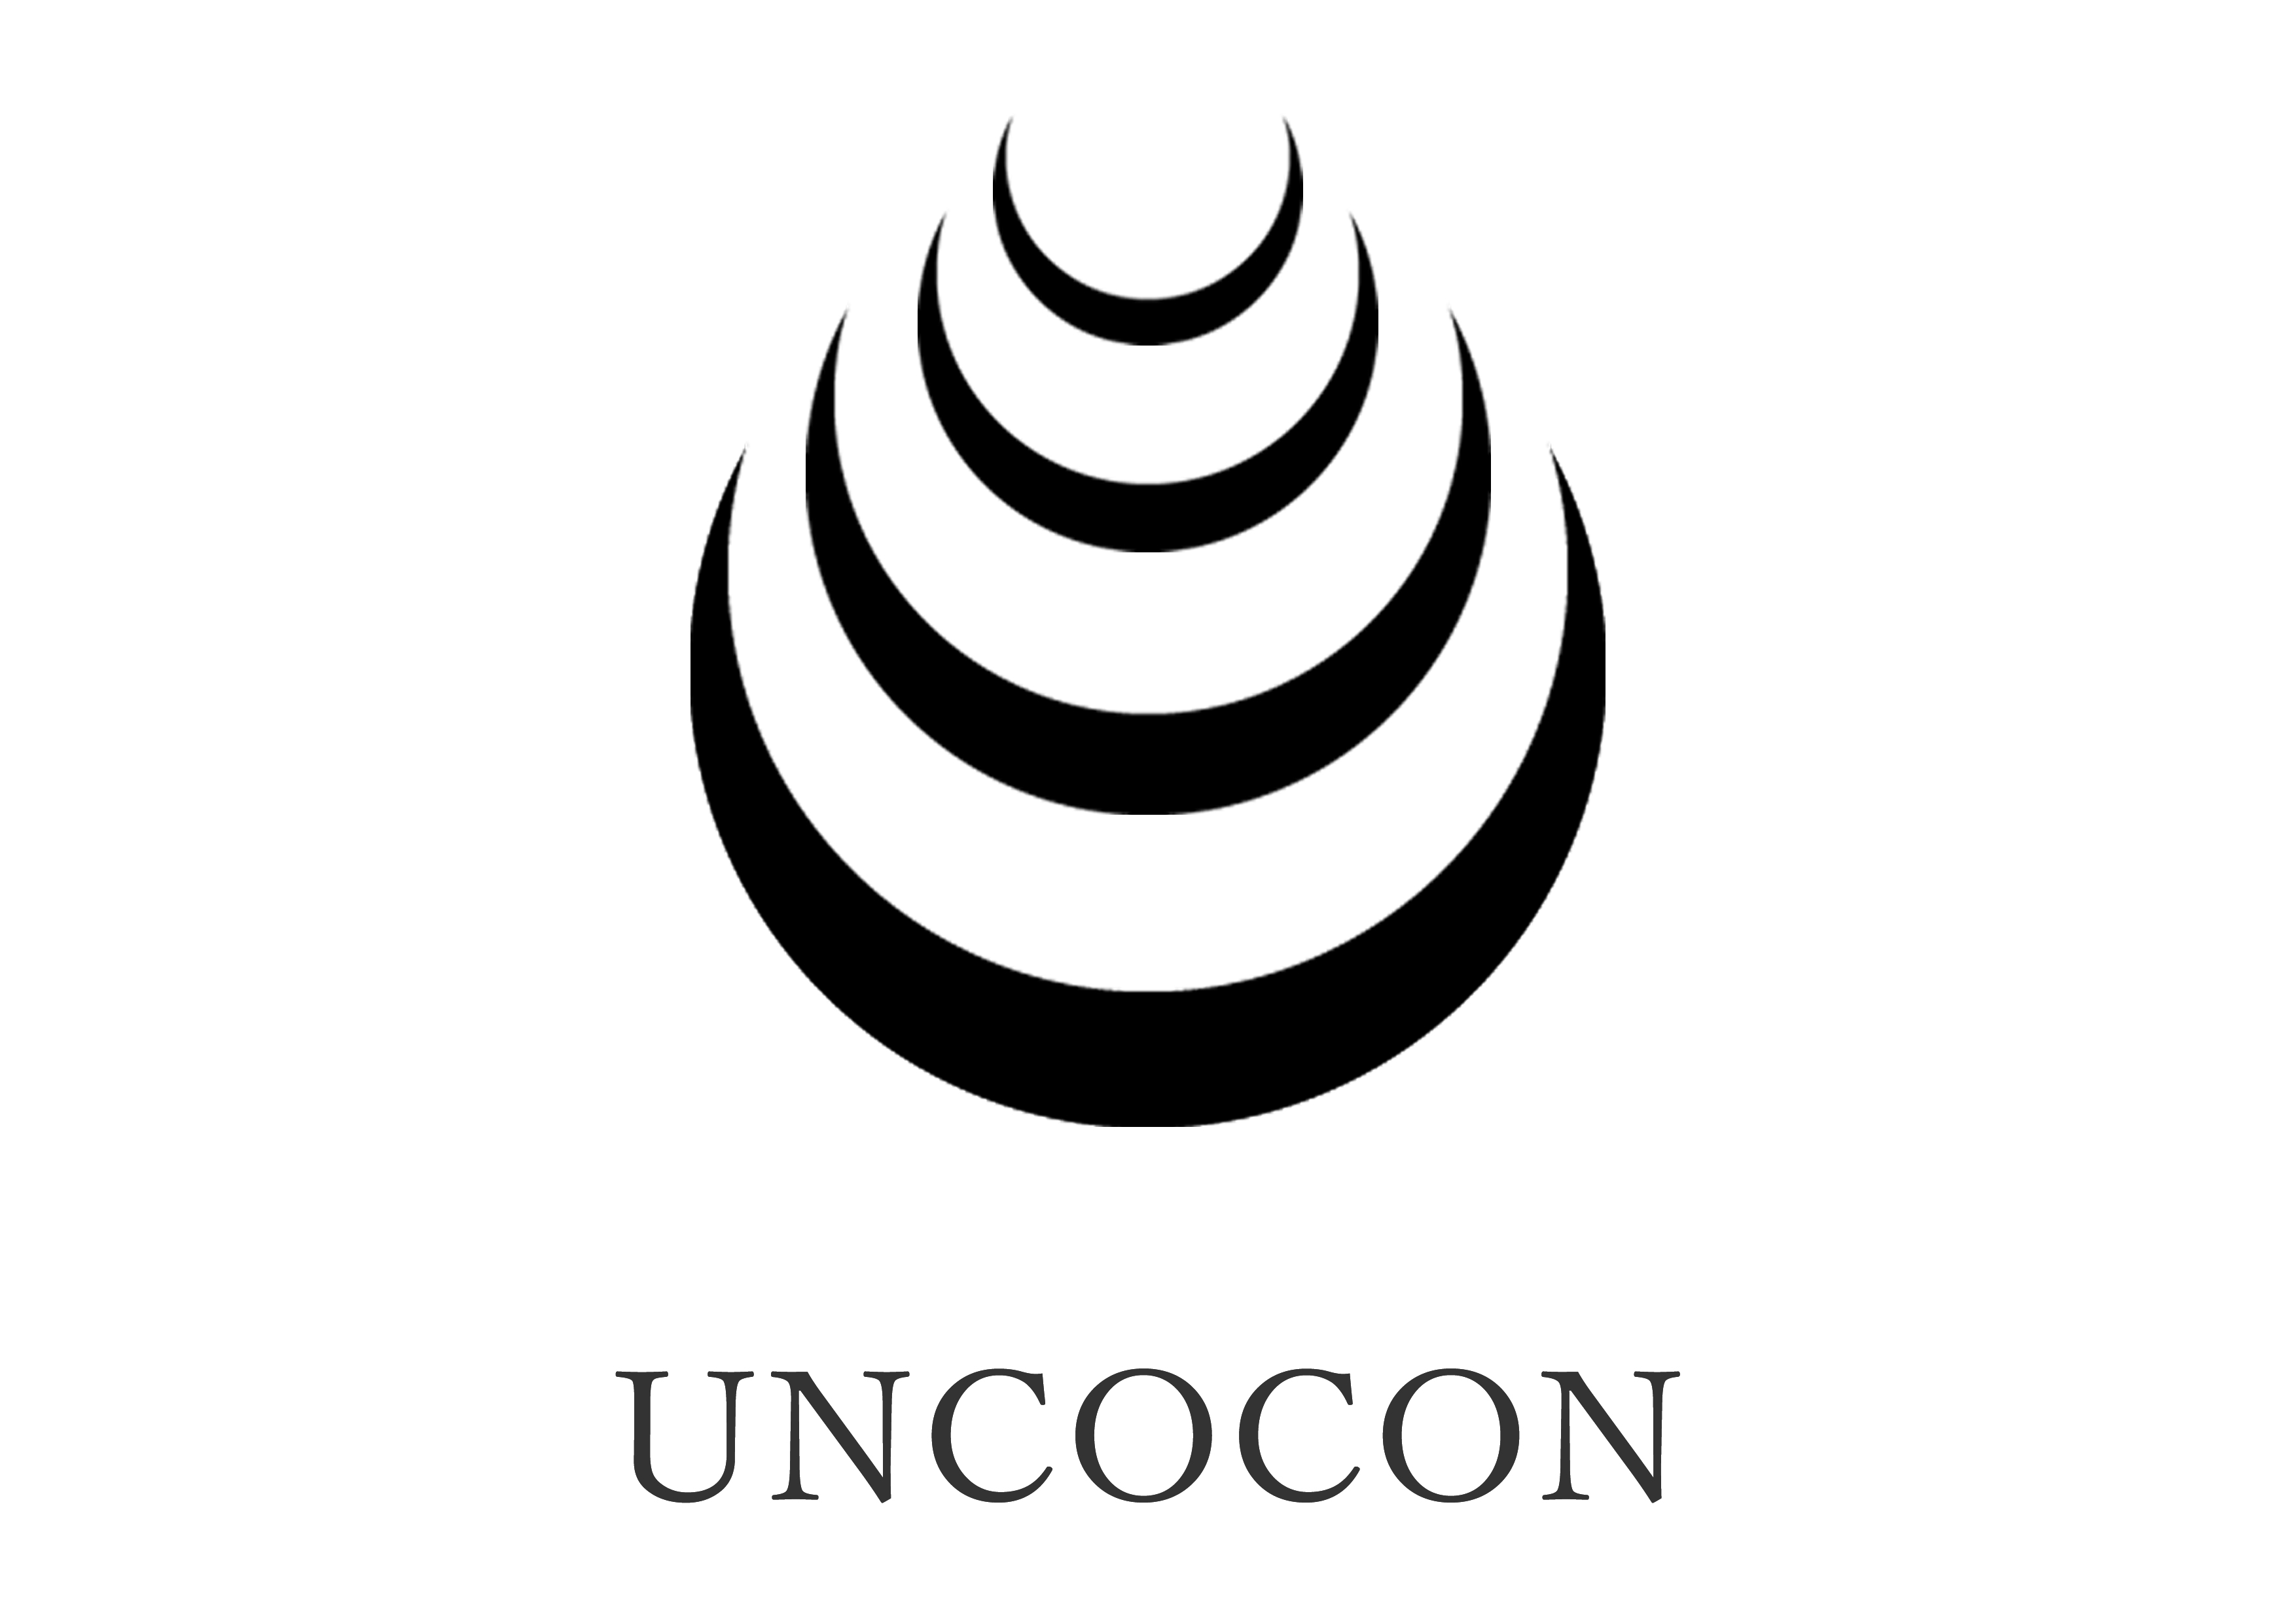 UNCOCON&co.